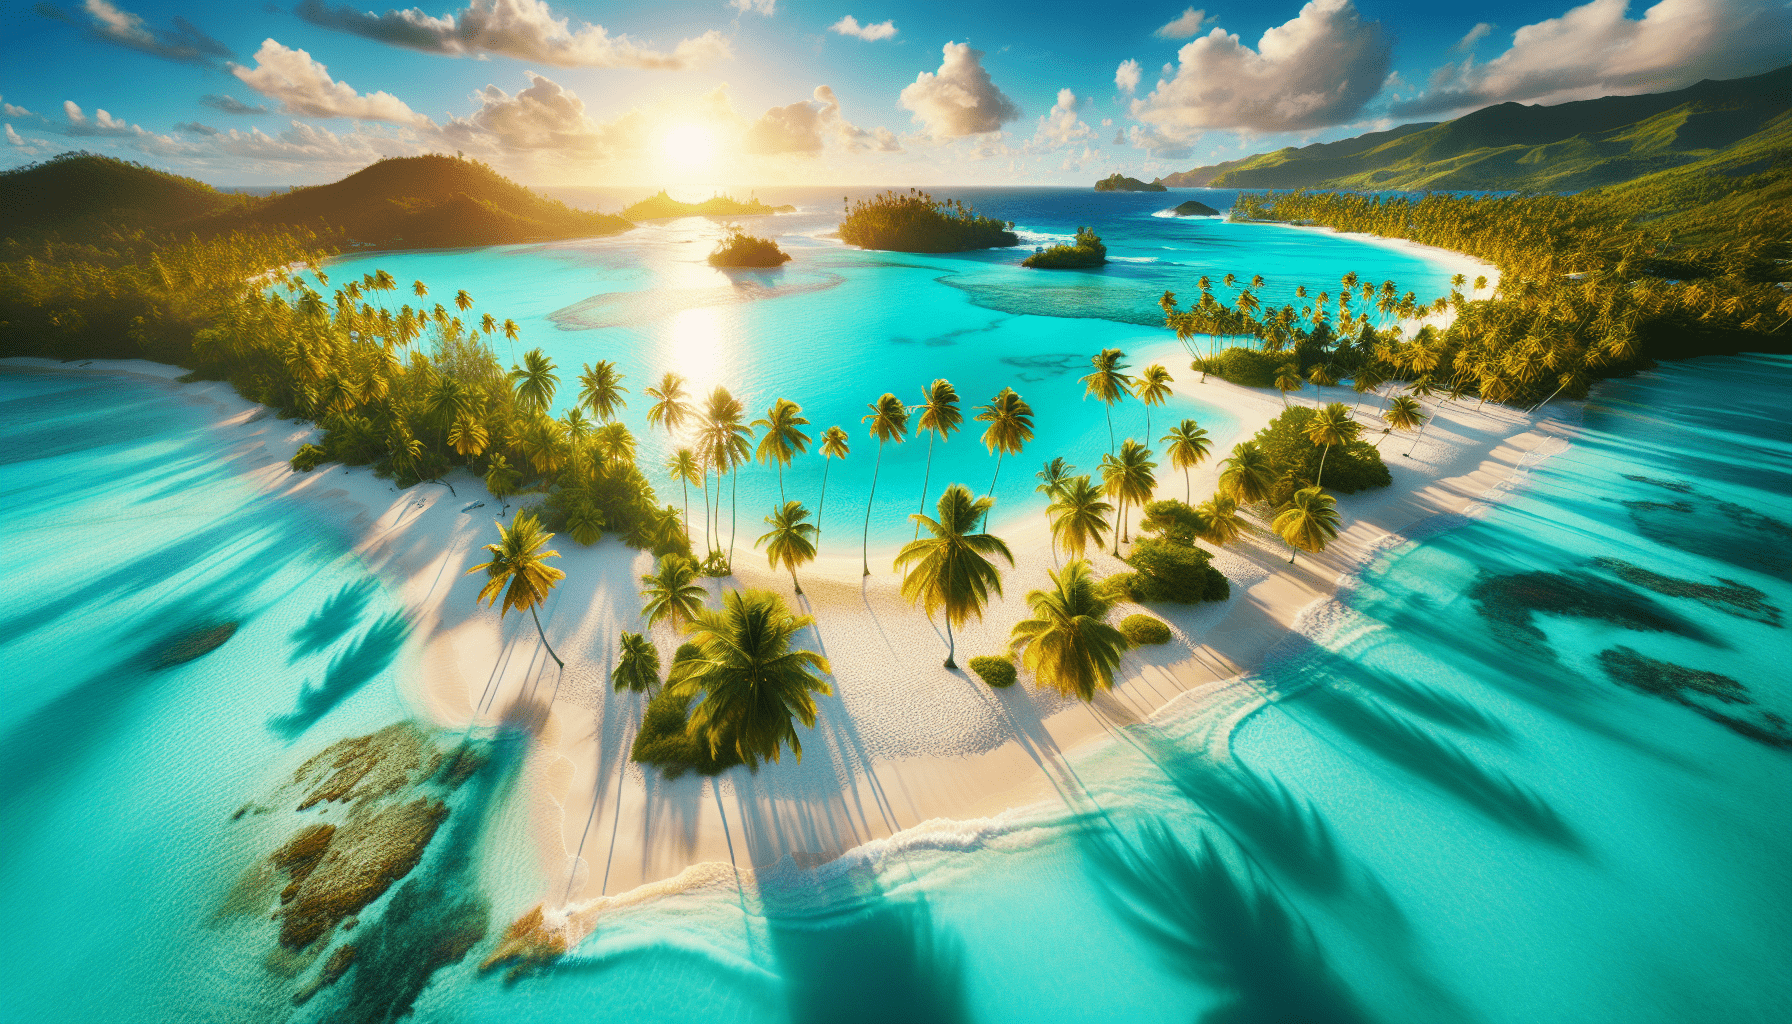 Welche Ist Die Schönste Karibische Insel?